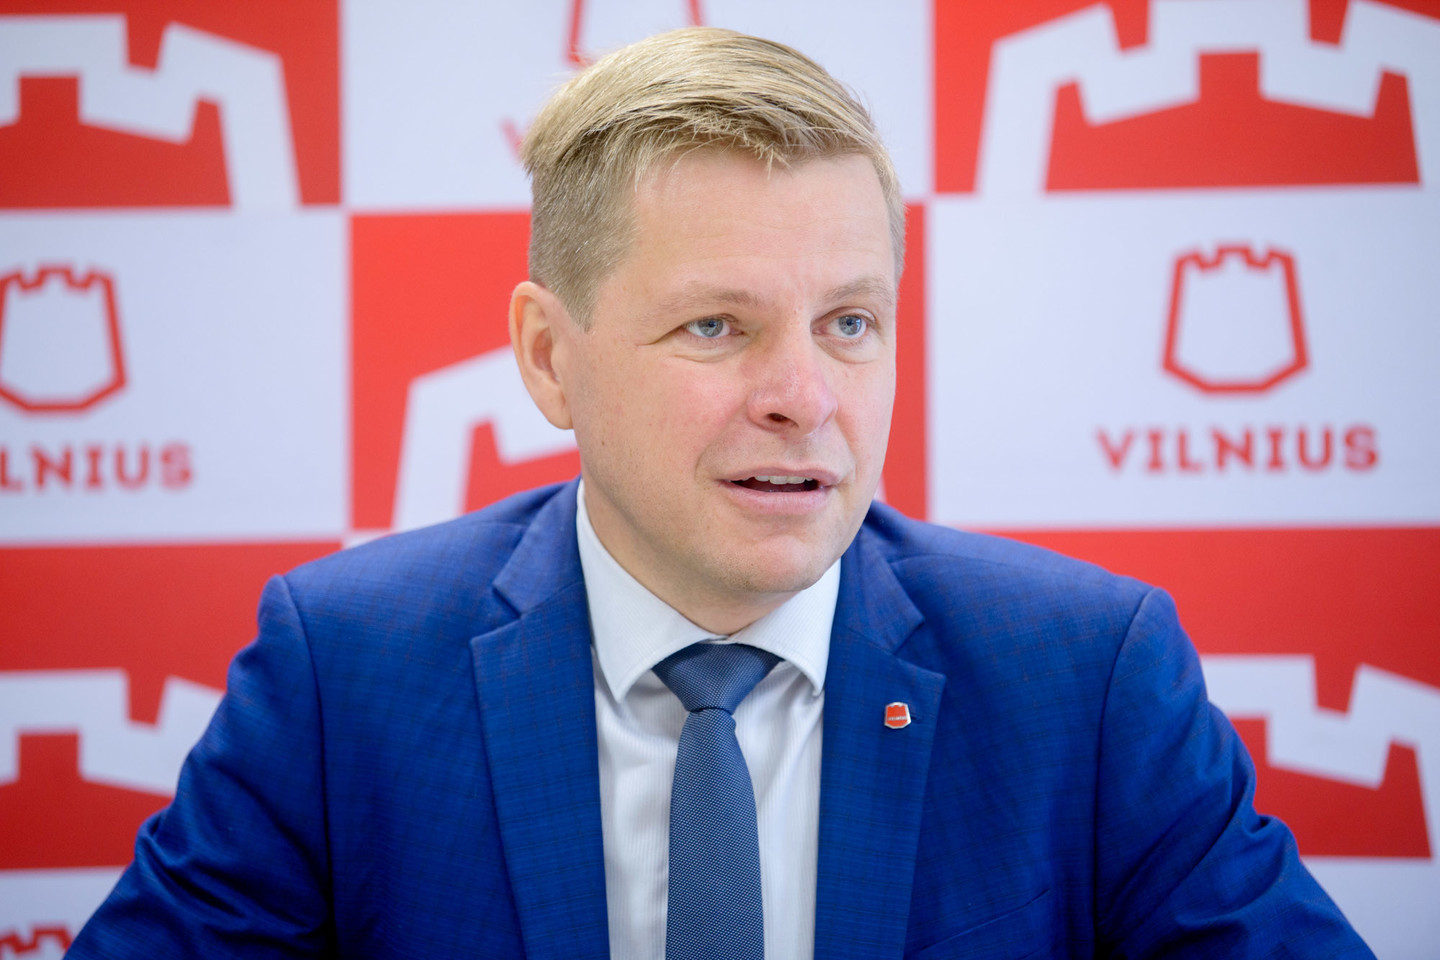  Vilniaus miesto meras pasidalino žinute dėl mieste atsiradusių užrašų.<br>J.Stacevičiaus nuotr.